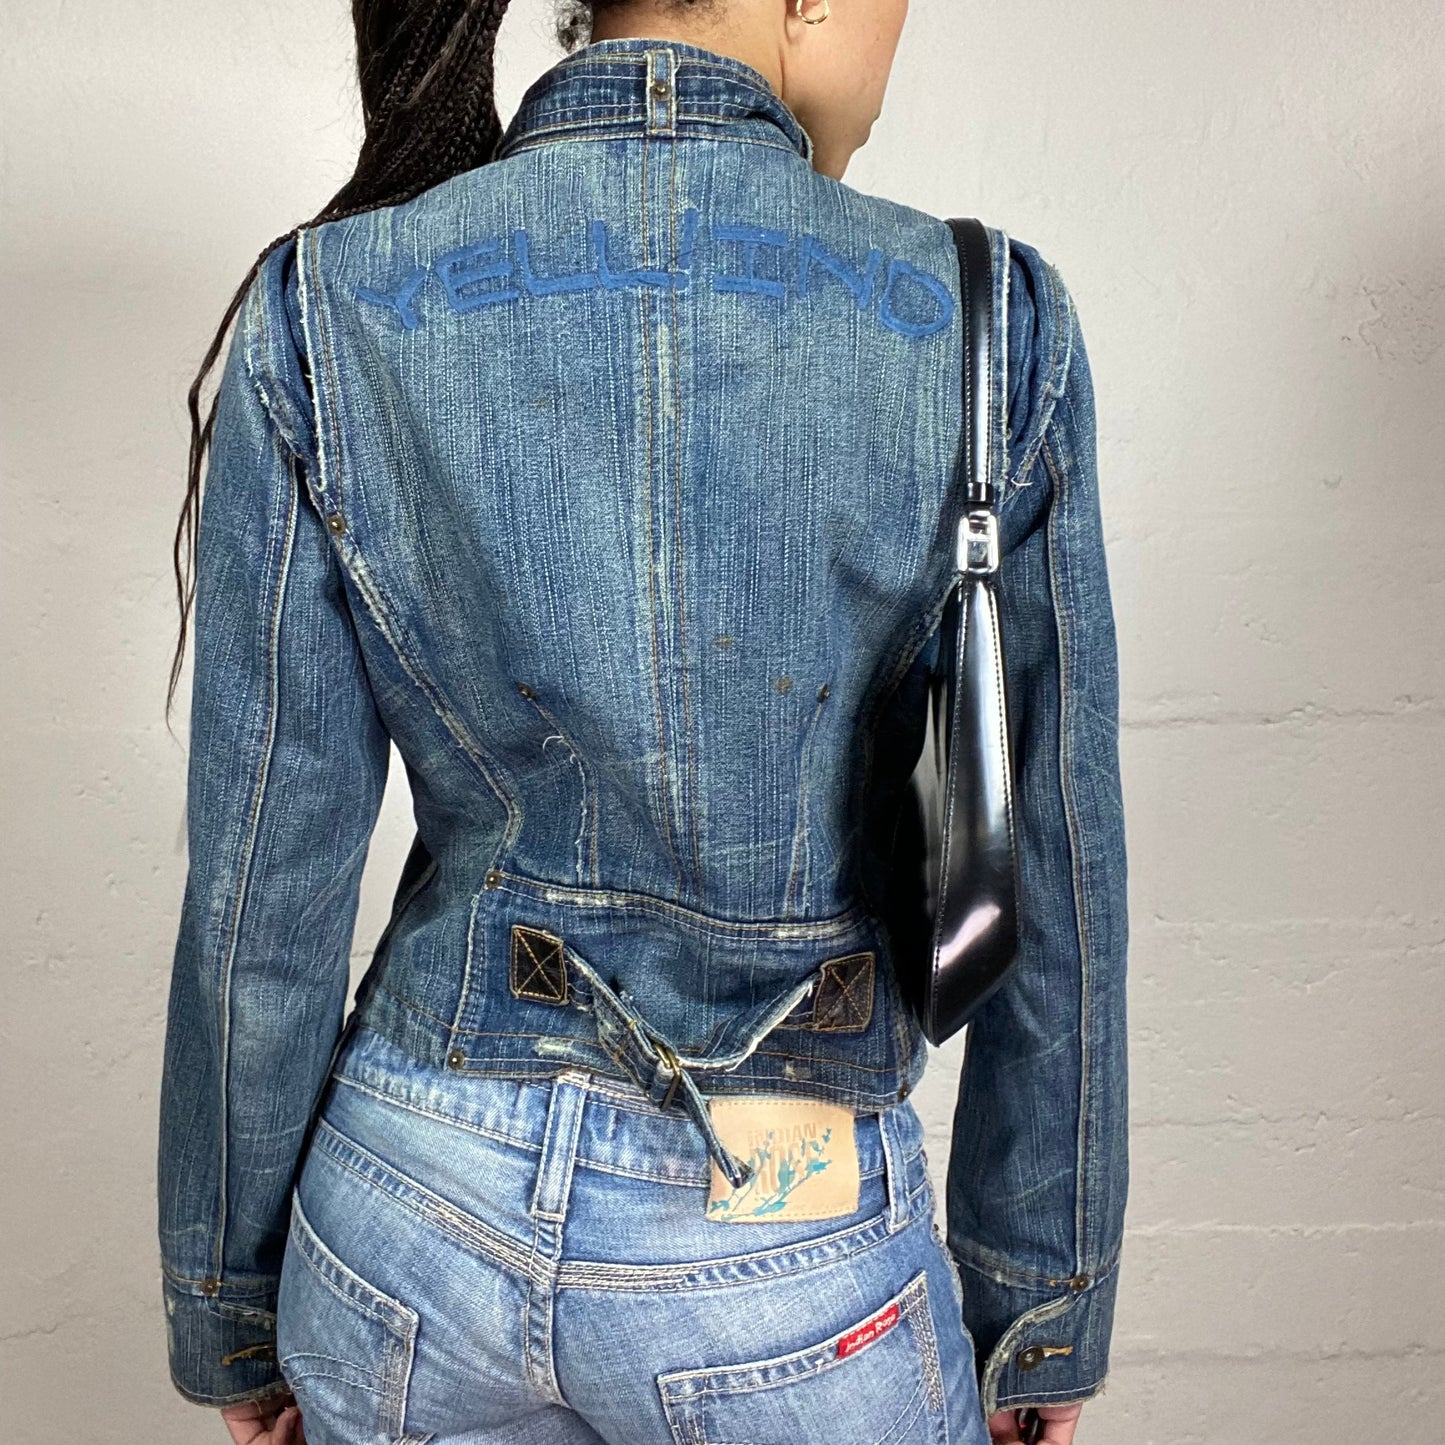 Vintage 2000’s Biker Girl Zip Up High Neck Washed Off Denim Motojacket with Neck Belt and Pocket Details (S)